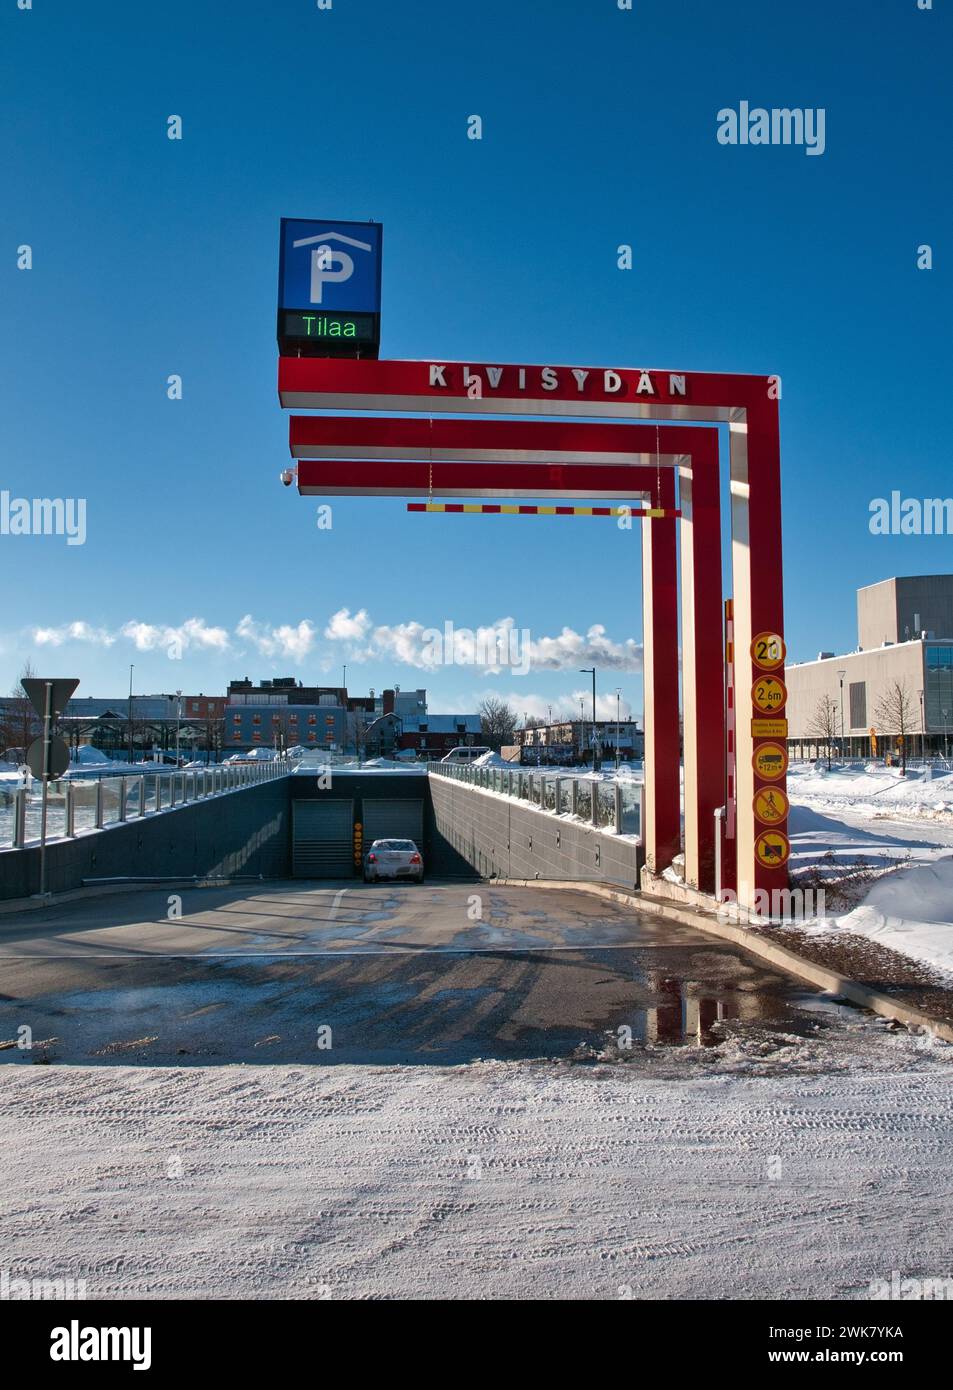 entrance to the underground parking lot Kivisydän in Oulu Finland Stock Photo